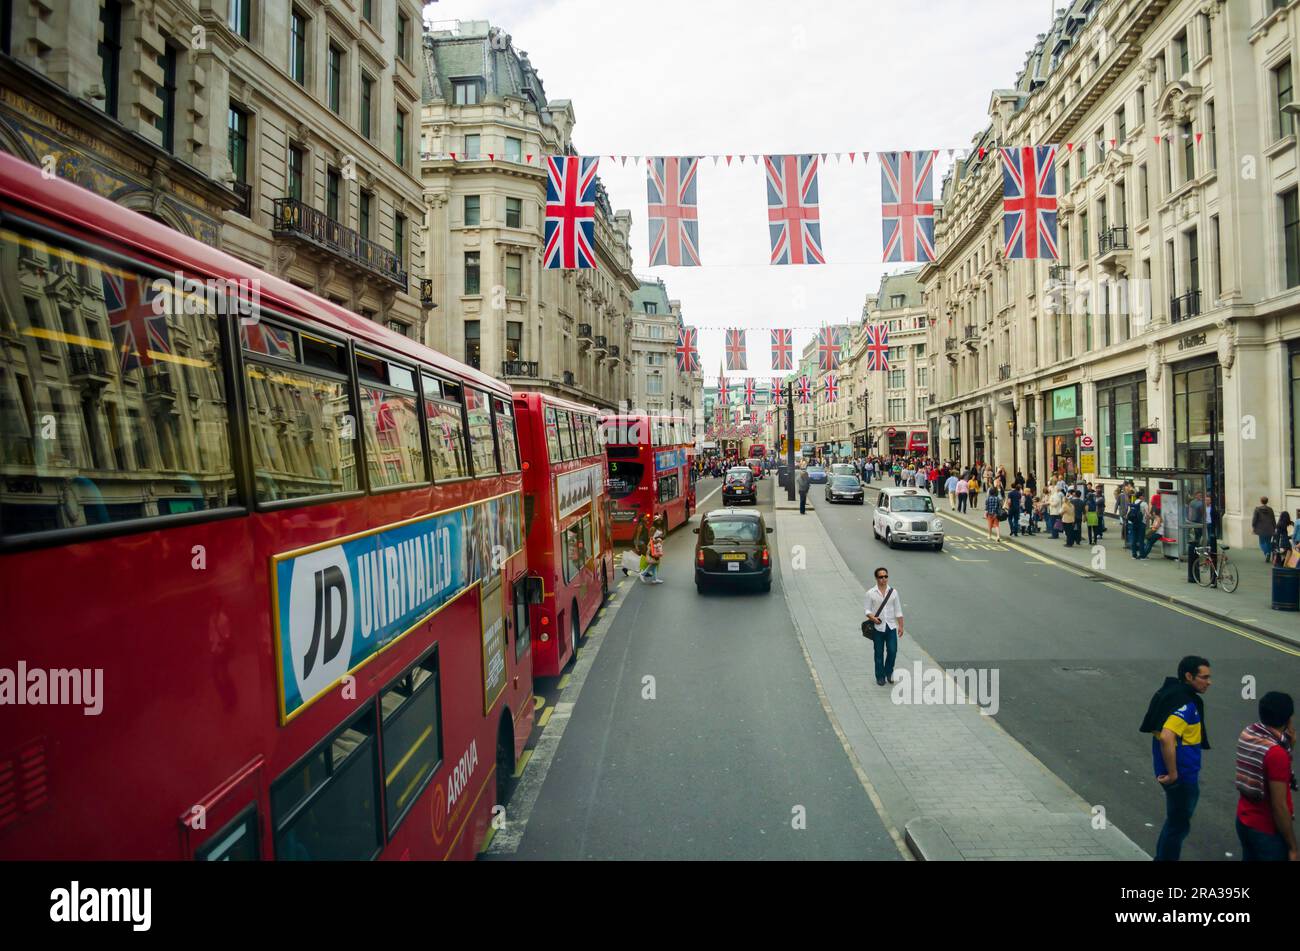 Le bandiere del Regno Unito decorano una trafficata strada di Londra mentre passano i leggendari taxi neri e gli autobus rossi a due piani. Le bandiere britanniche decorano le strade per le incoronazioni, i giubileo Foto Stock